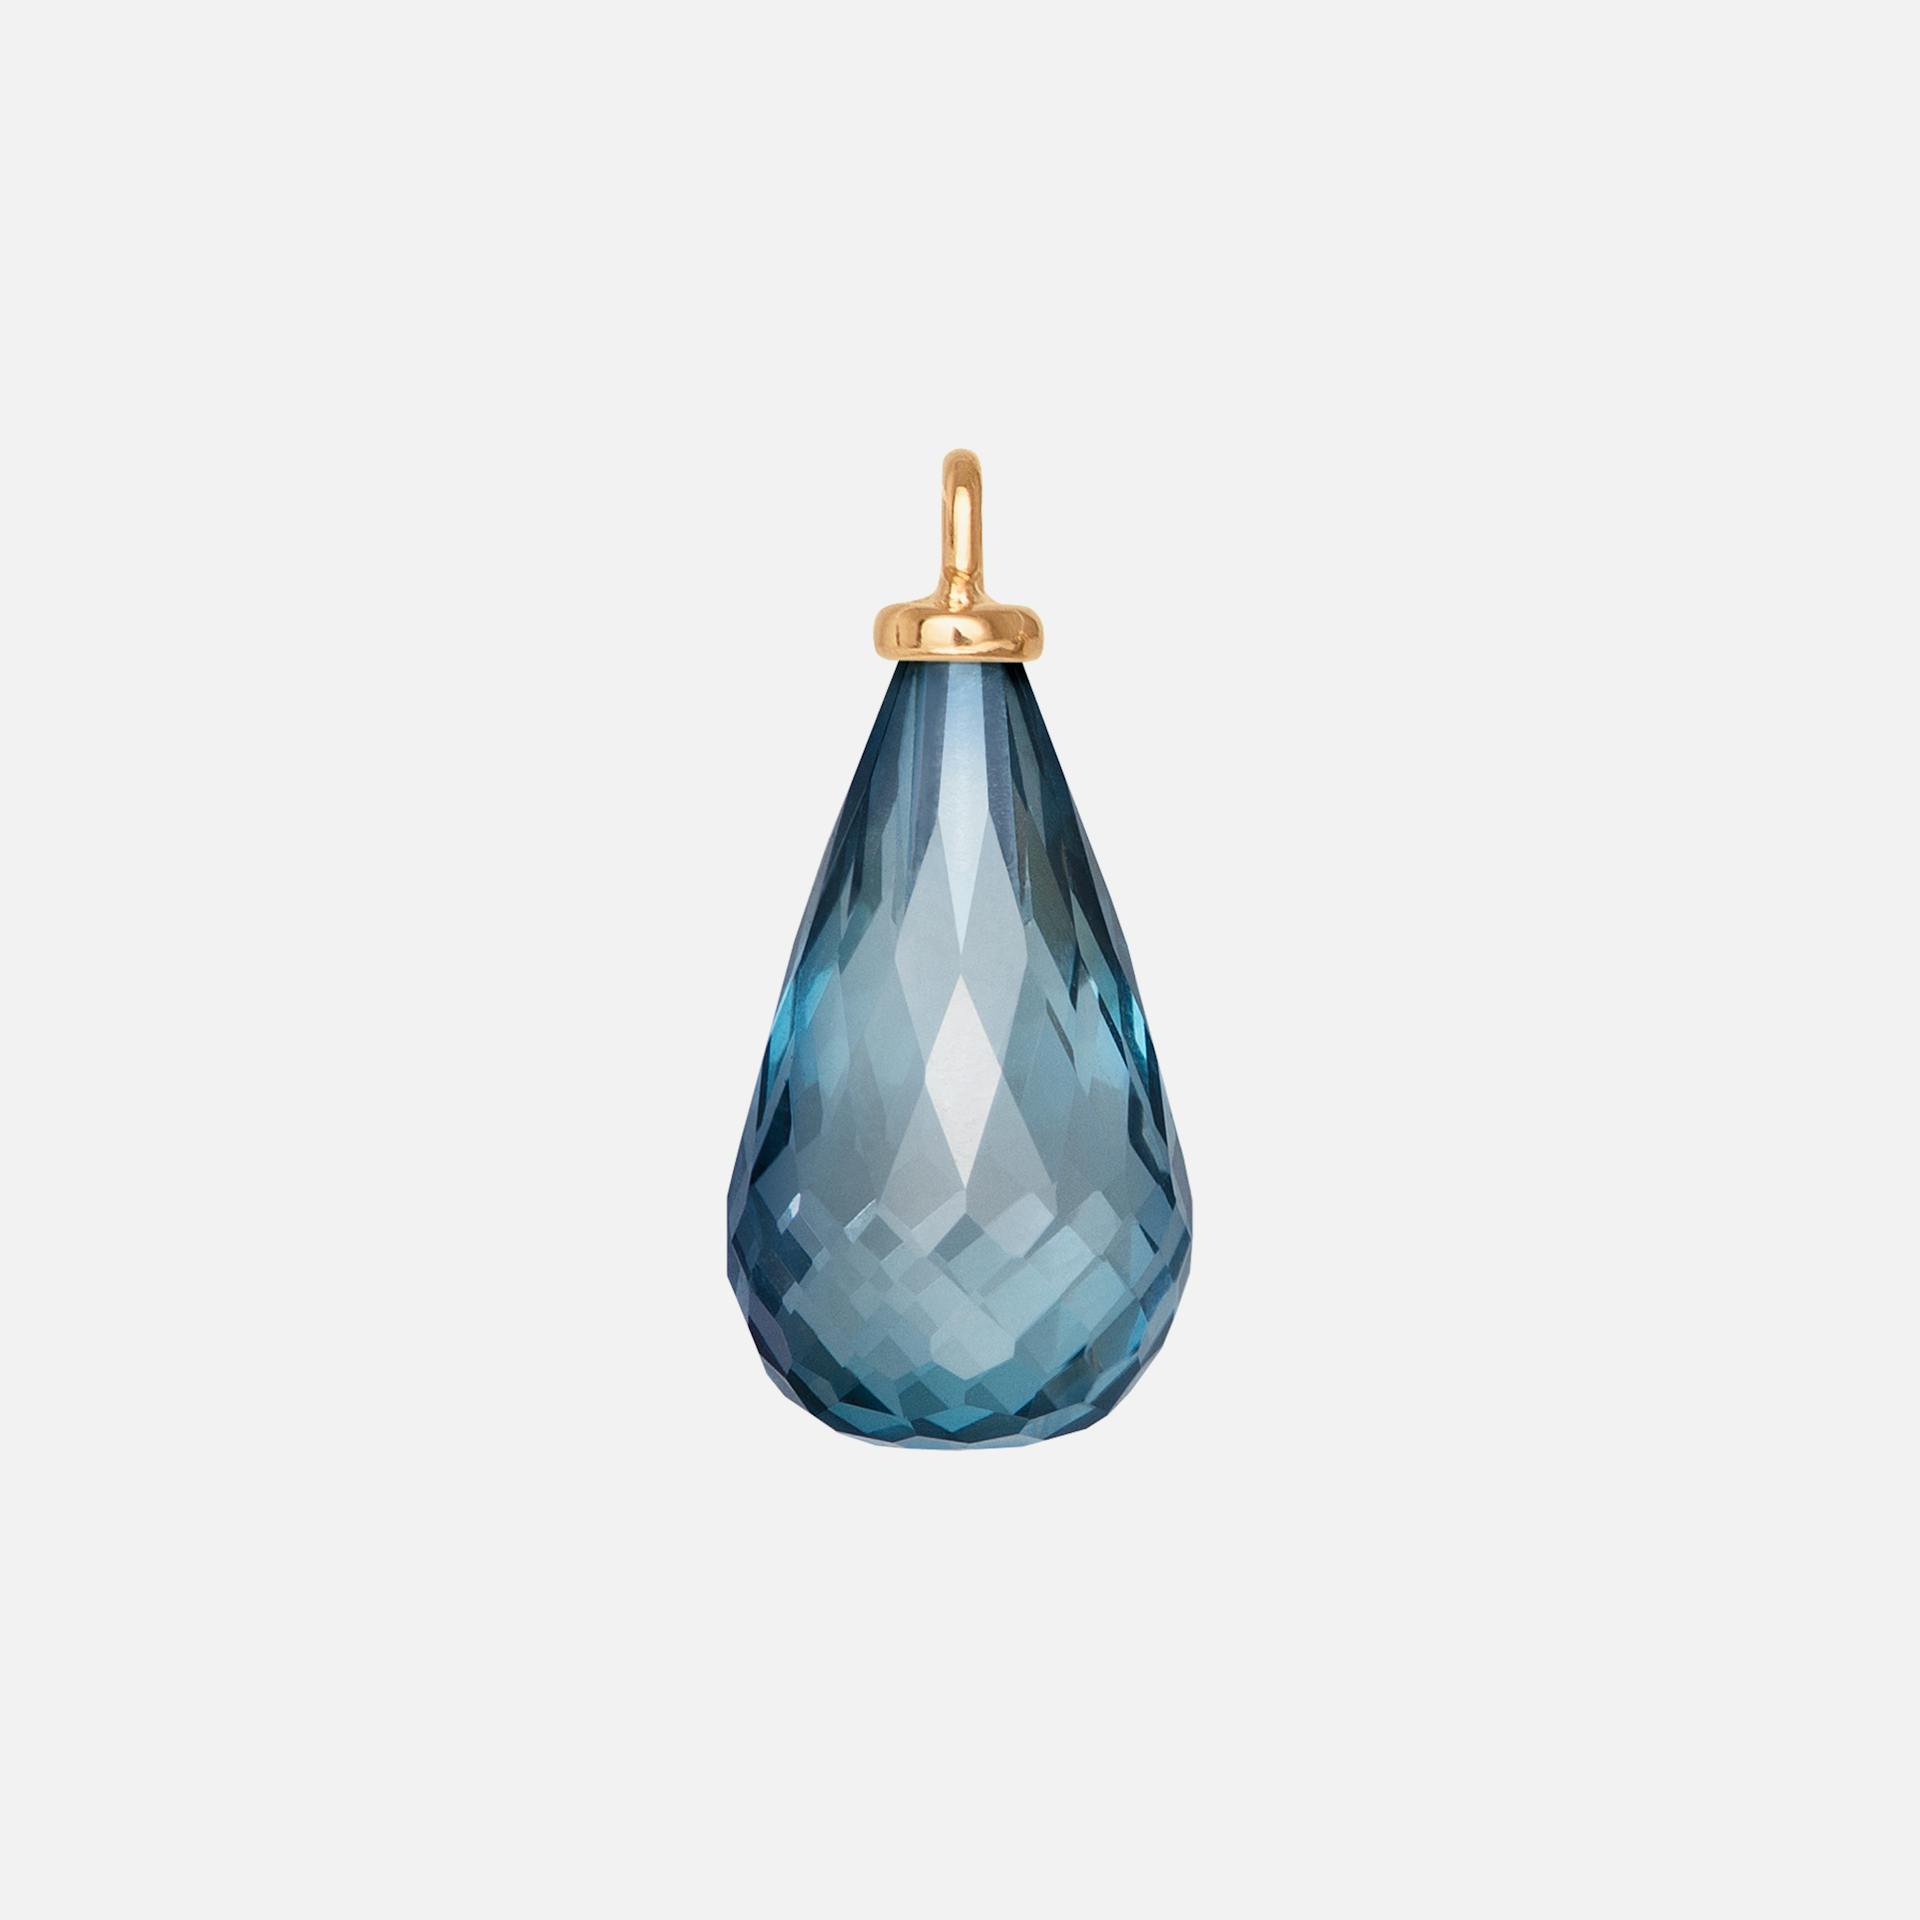 Drop Earring Pendant in 18K Yellow Gold with London Blue Topaz |  Ole Lynggaard Copenhagen 